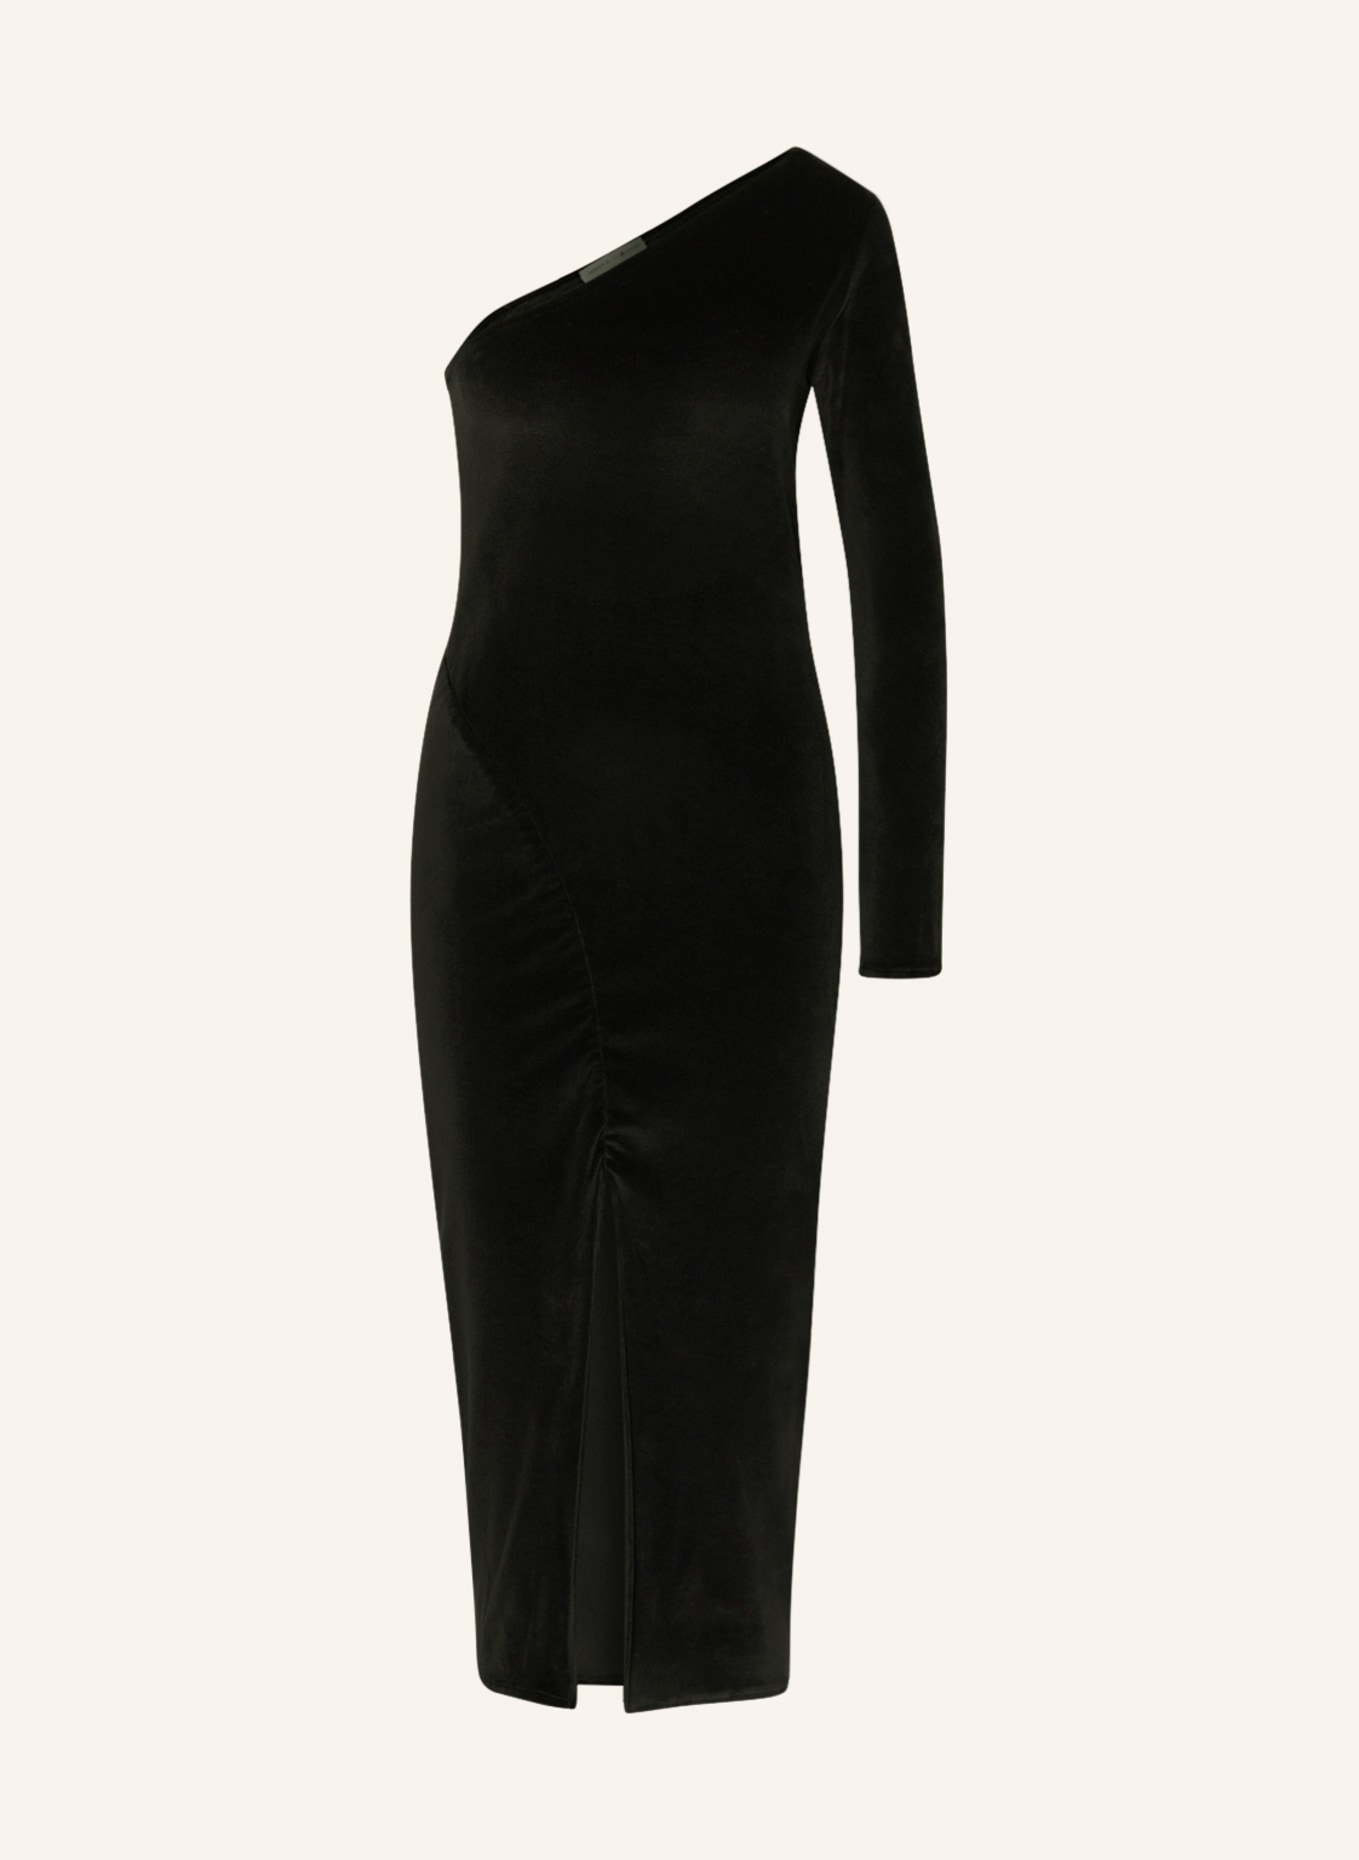 MIRYAM One-Shoulder-Kleid aus Samt, Farbe: SCHWARZ (Bild 1)